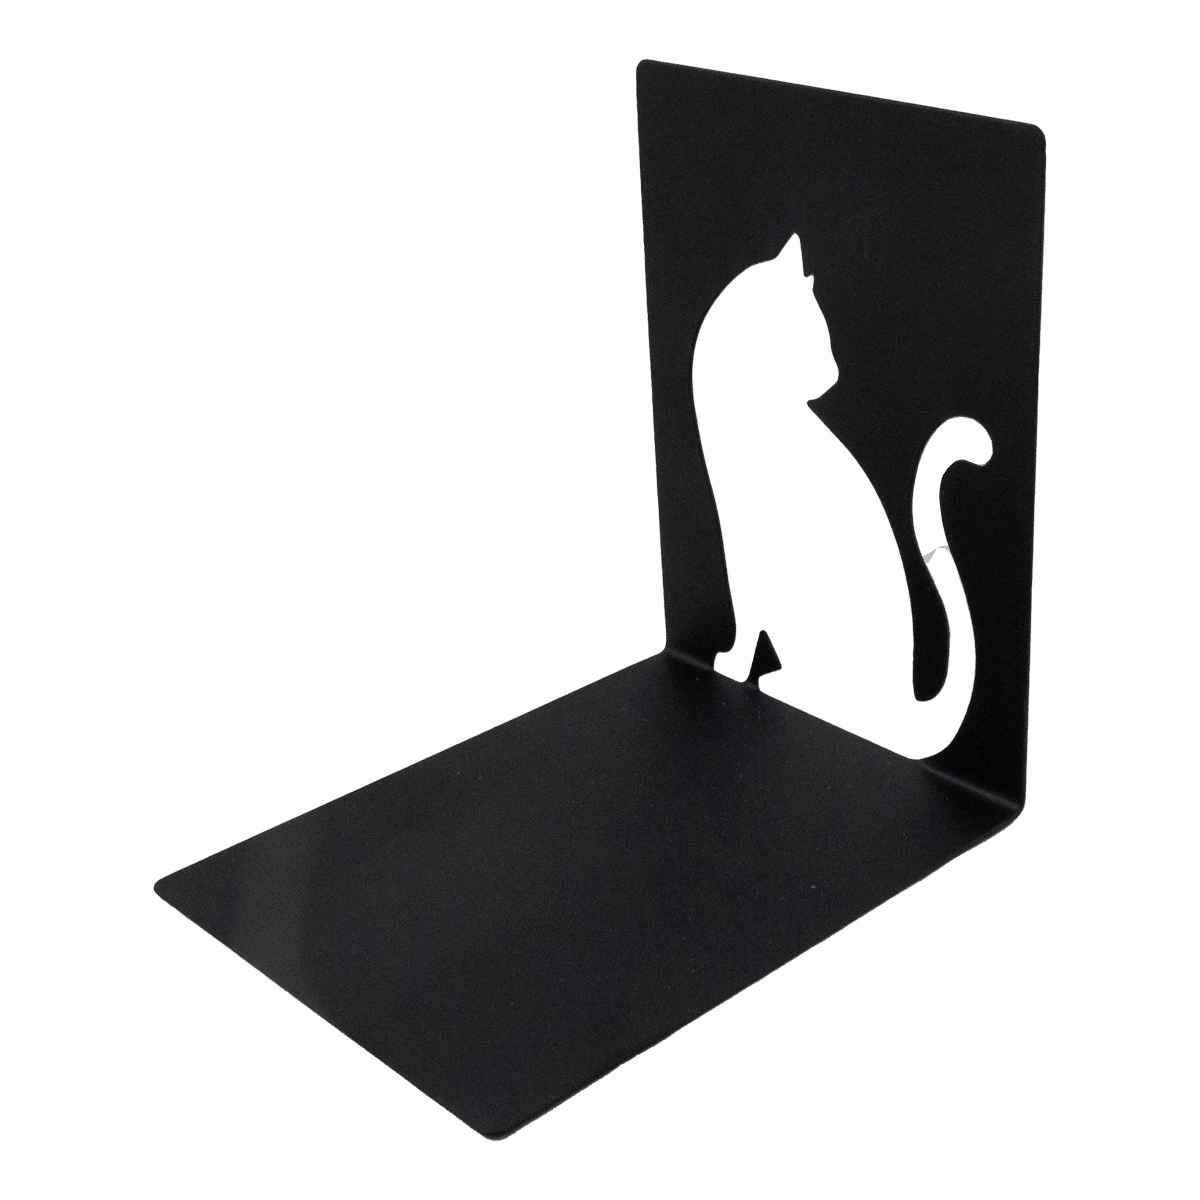 Kattmotiv på bokstöden i svart metall